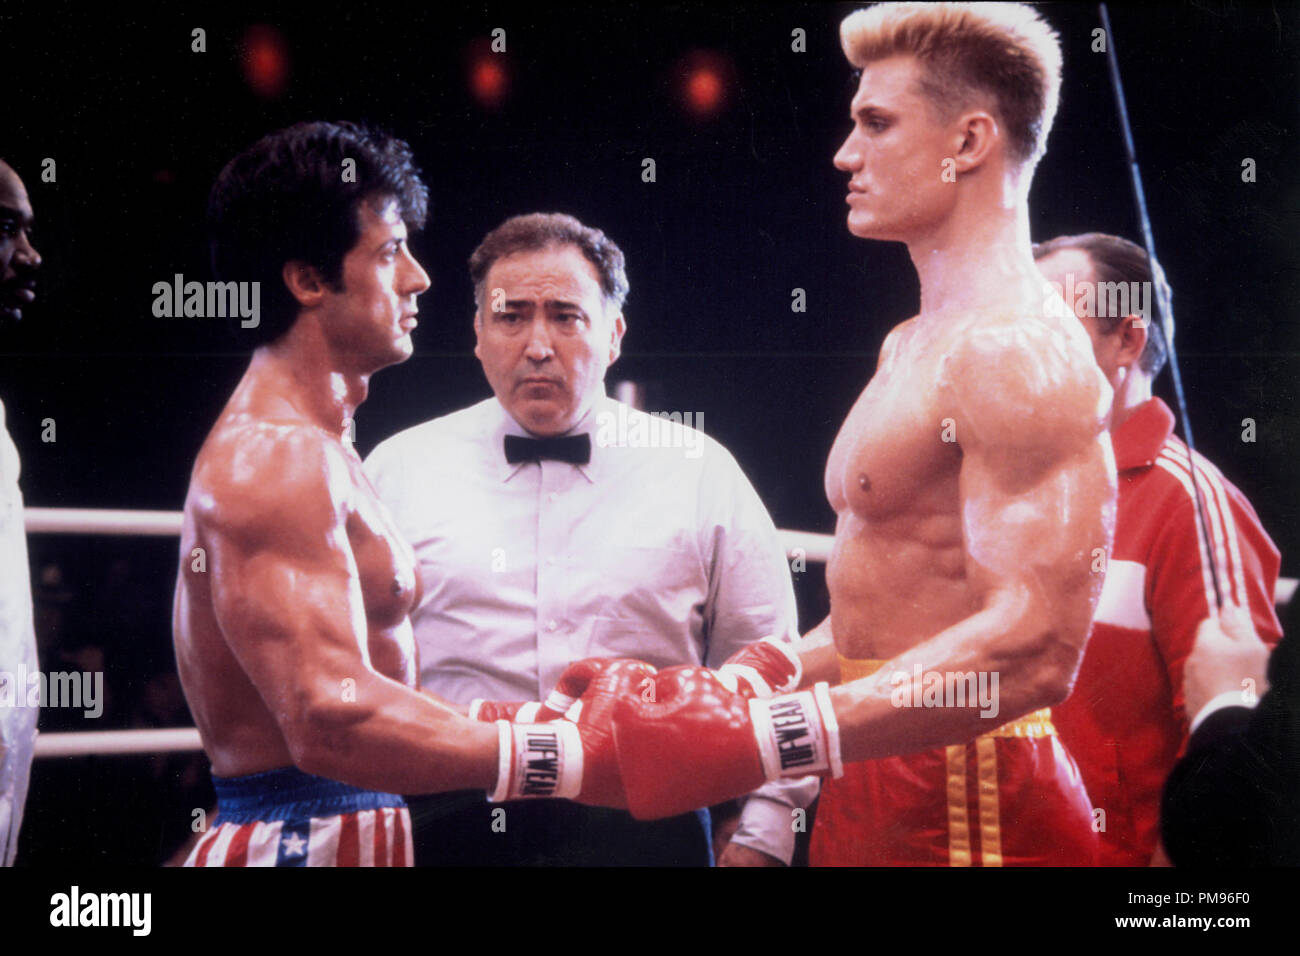 Studio Werbung immer noch von "Rocky IV" Sylvester Stallone, Dolph Lundgren © 1985 MGM/UA Alle Rechte vorbehalten Datei Referenz # 31703100 THA für die redaktionelle Nutzung nur Stockfoto